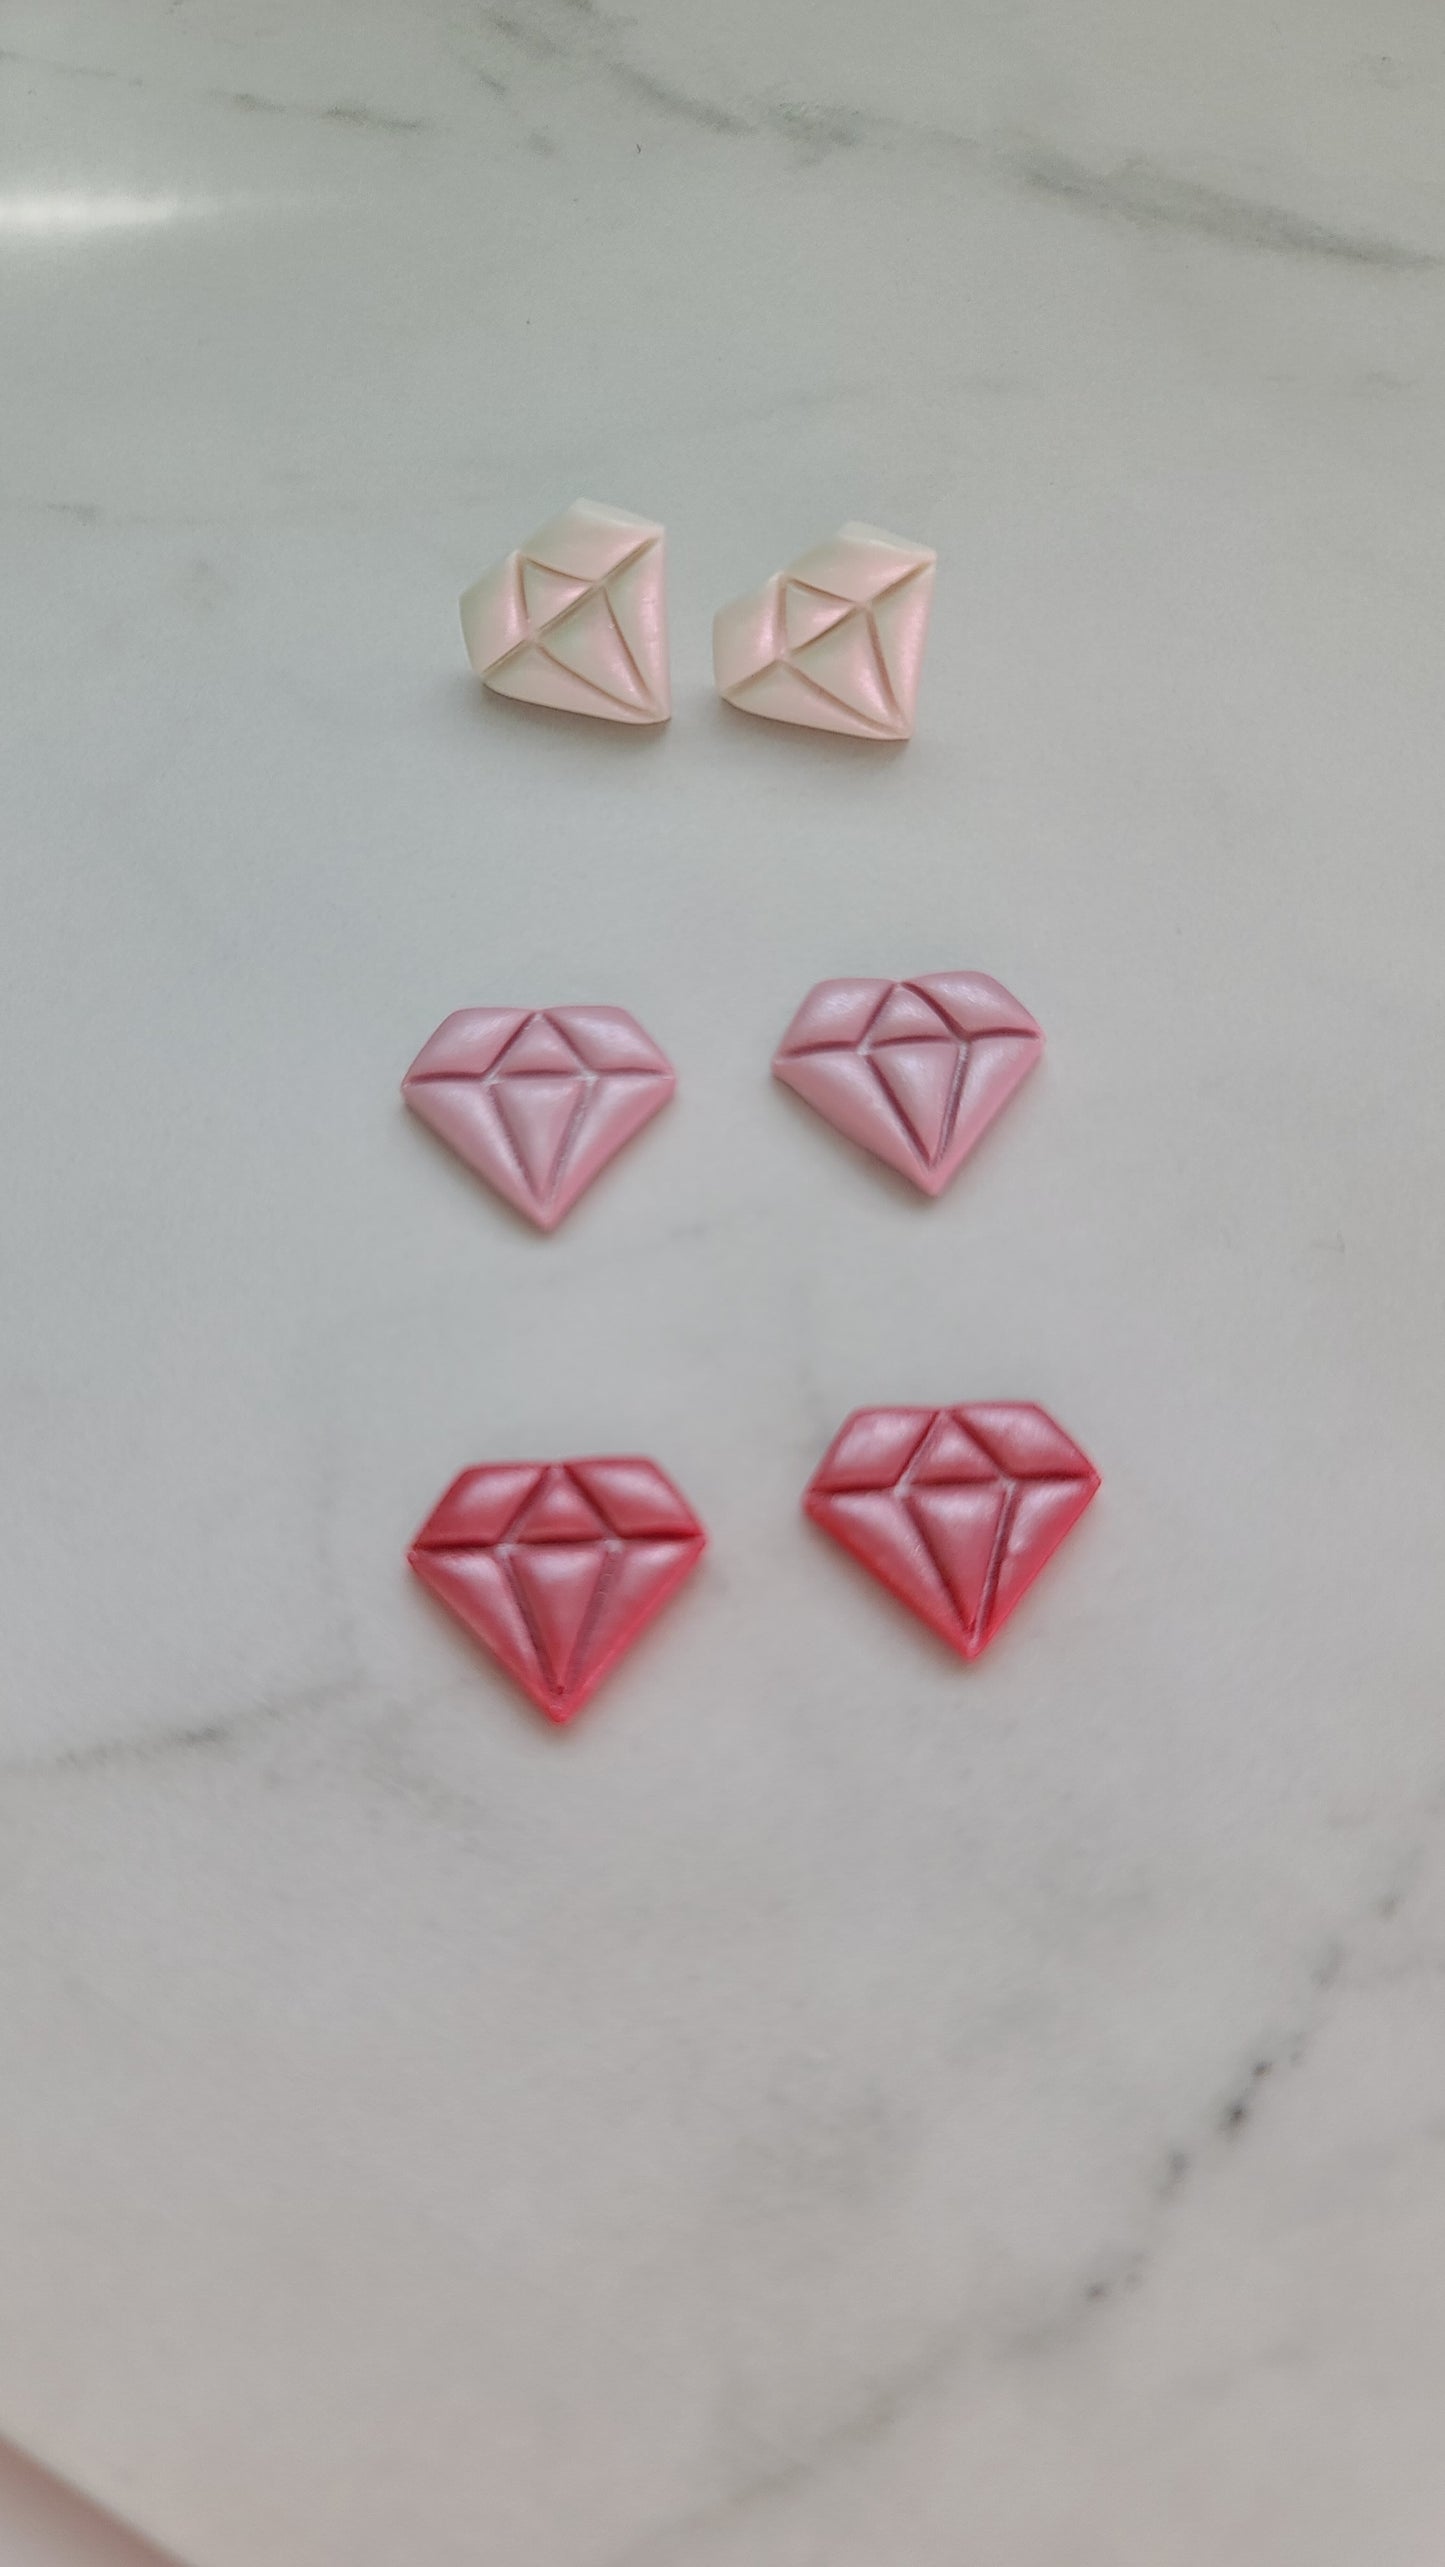 Shimmery diamond shaped Studs earrings